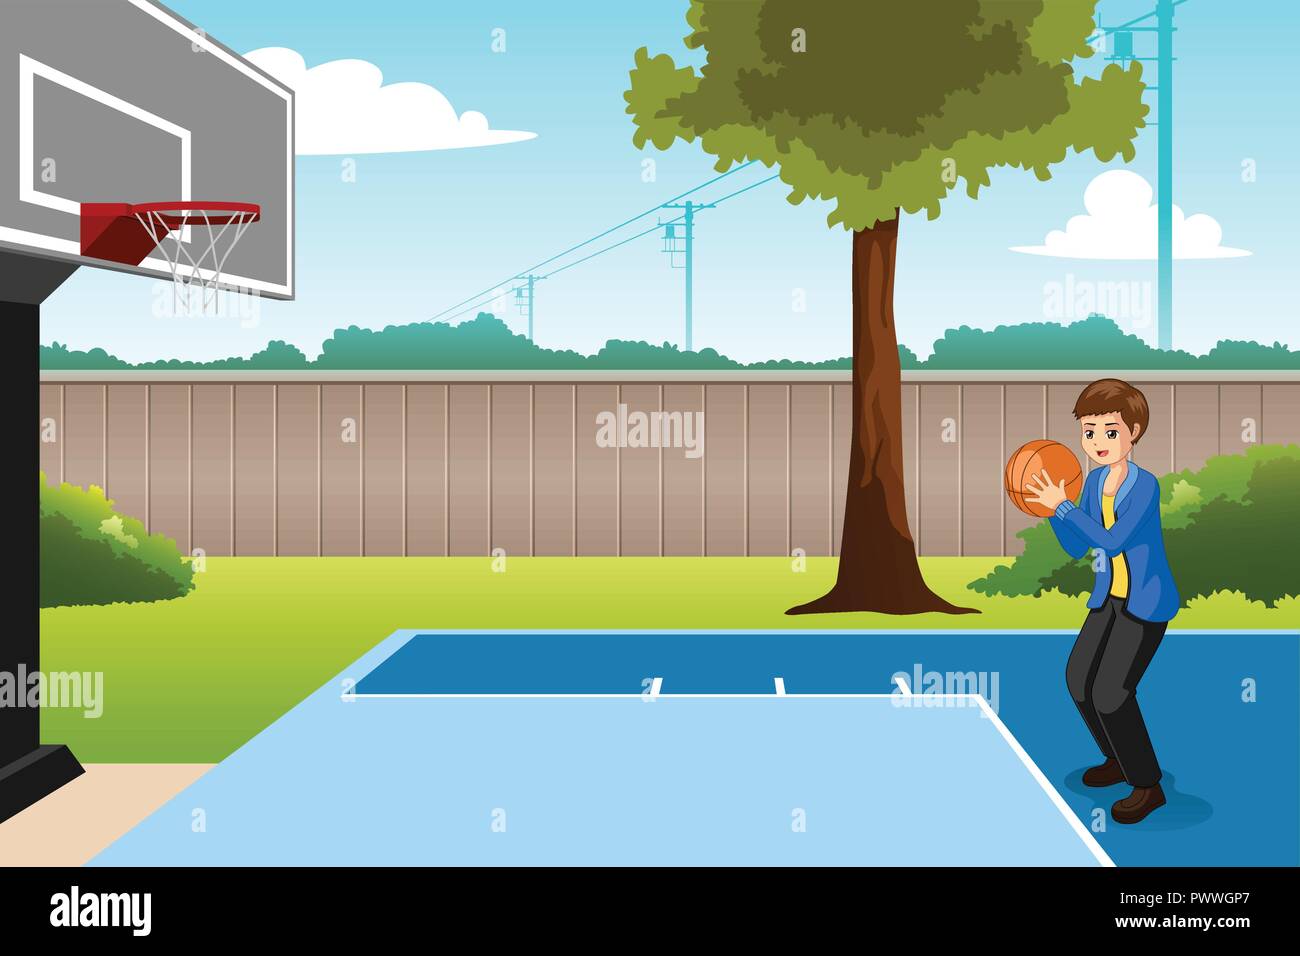 Un vecteur illustration de Garçon jouant au basket-ball dans la cour Illustration de Vecteur